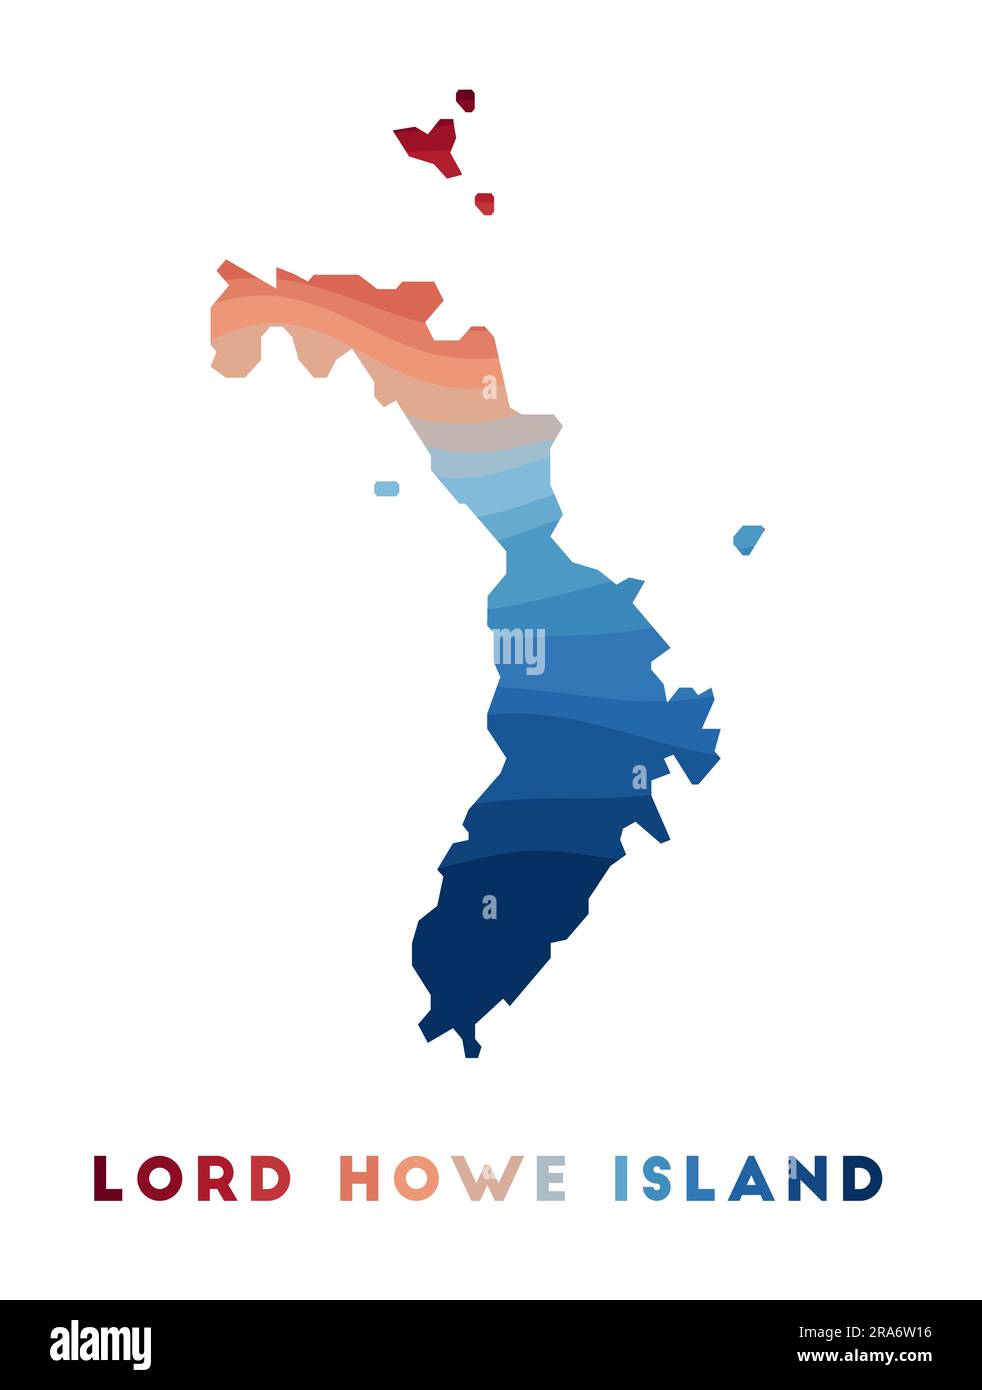 Carte de l'île Lord Howe. Carte de l'île avec de belles vagues géométriques dans les couleurs bleu rouge. Forme de Lord Howe. Illustration vectorielle. Illustration de Vecteur